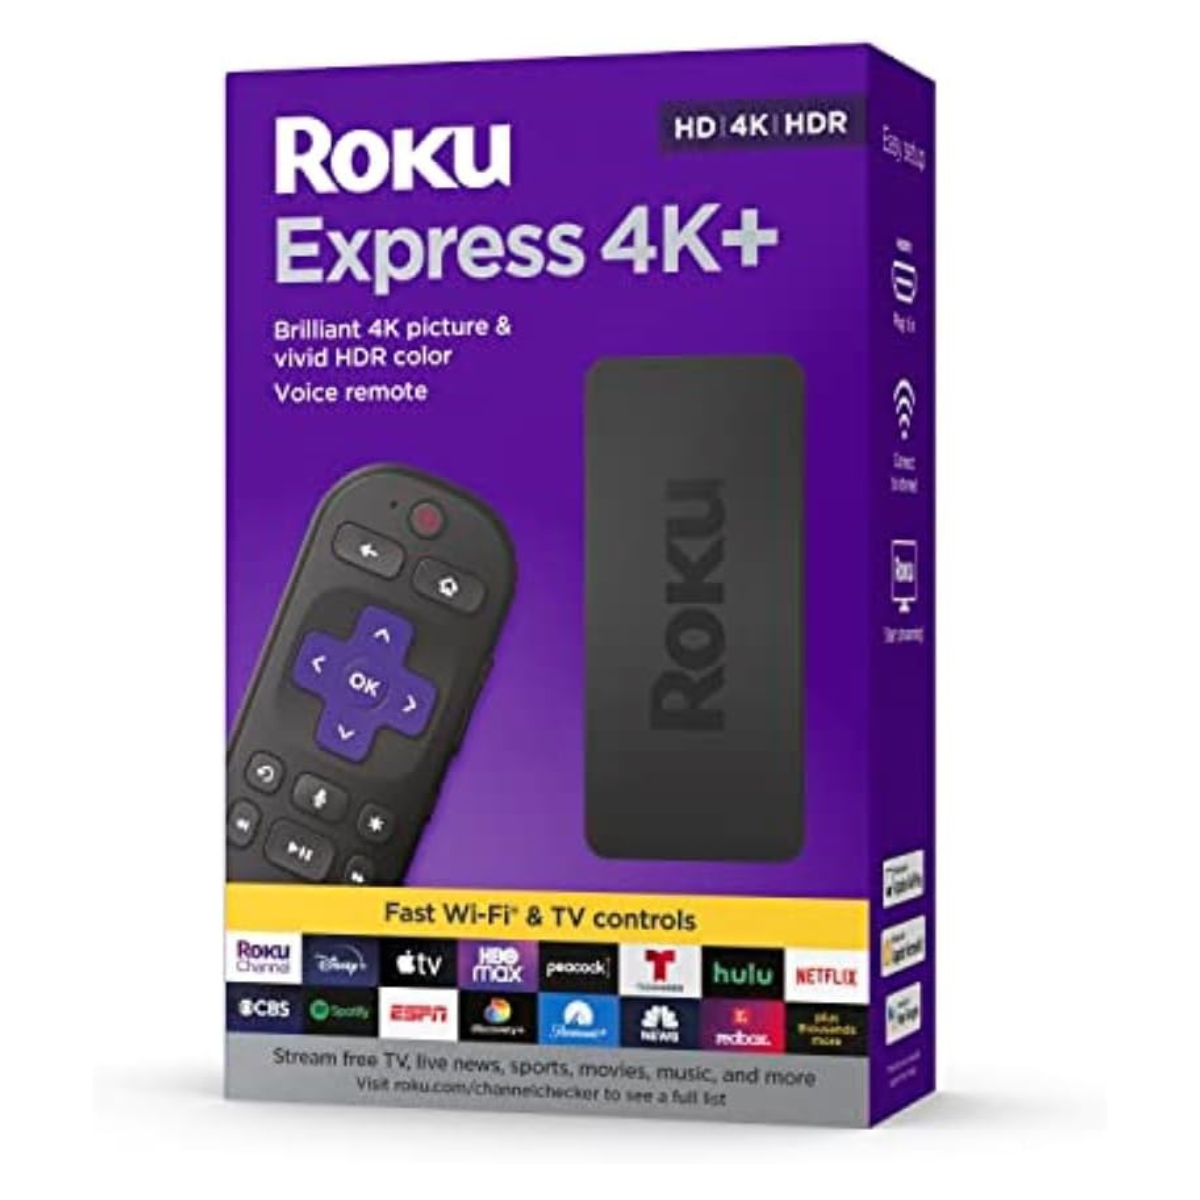 The Roku Express 4K+